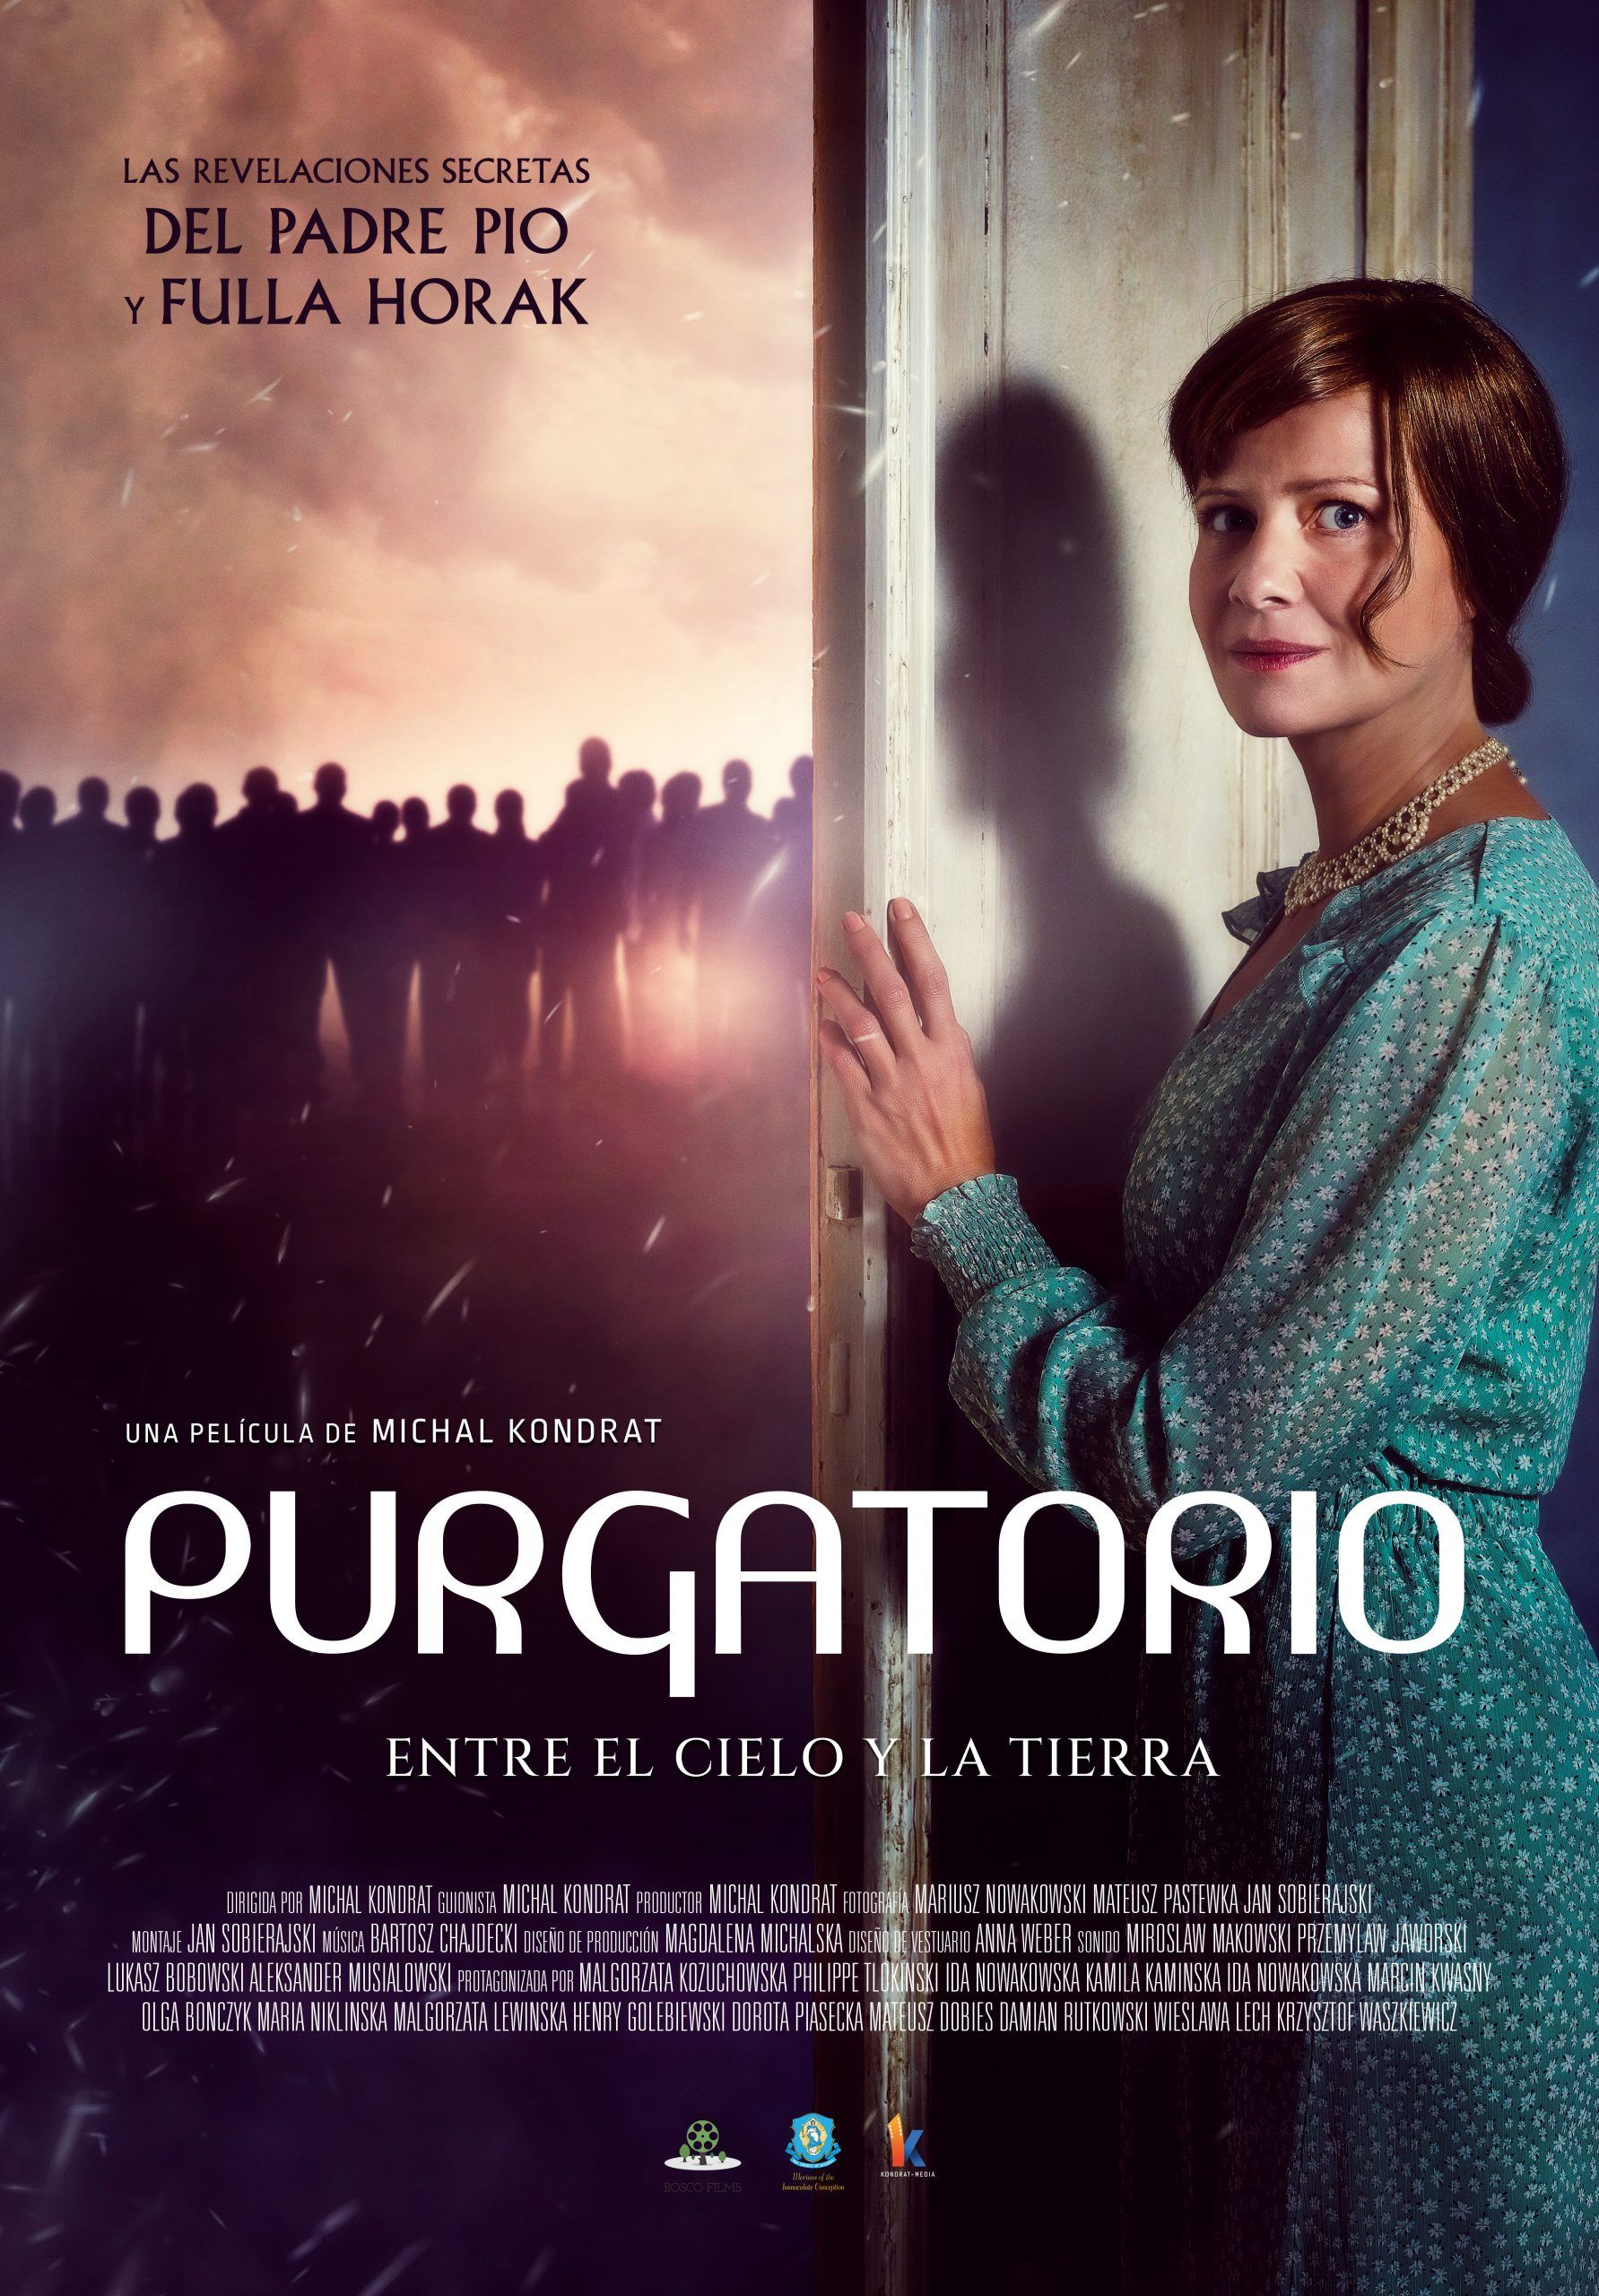 ¿Alguien sabe cómo es realmente el purgatorio? Llega la película que nos lo puede explicar.